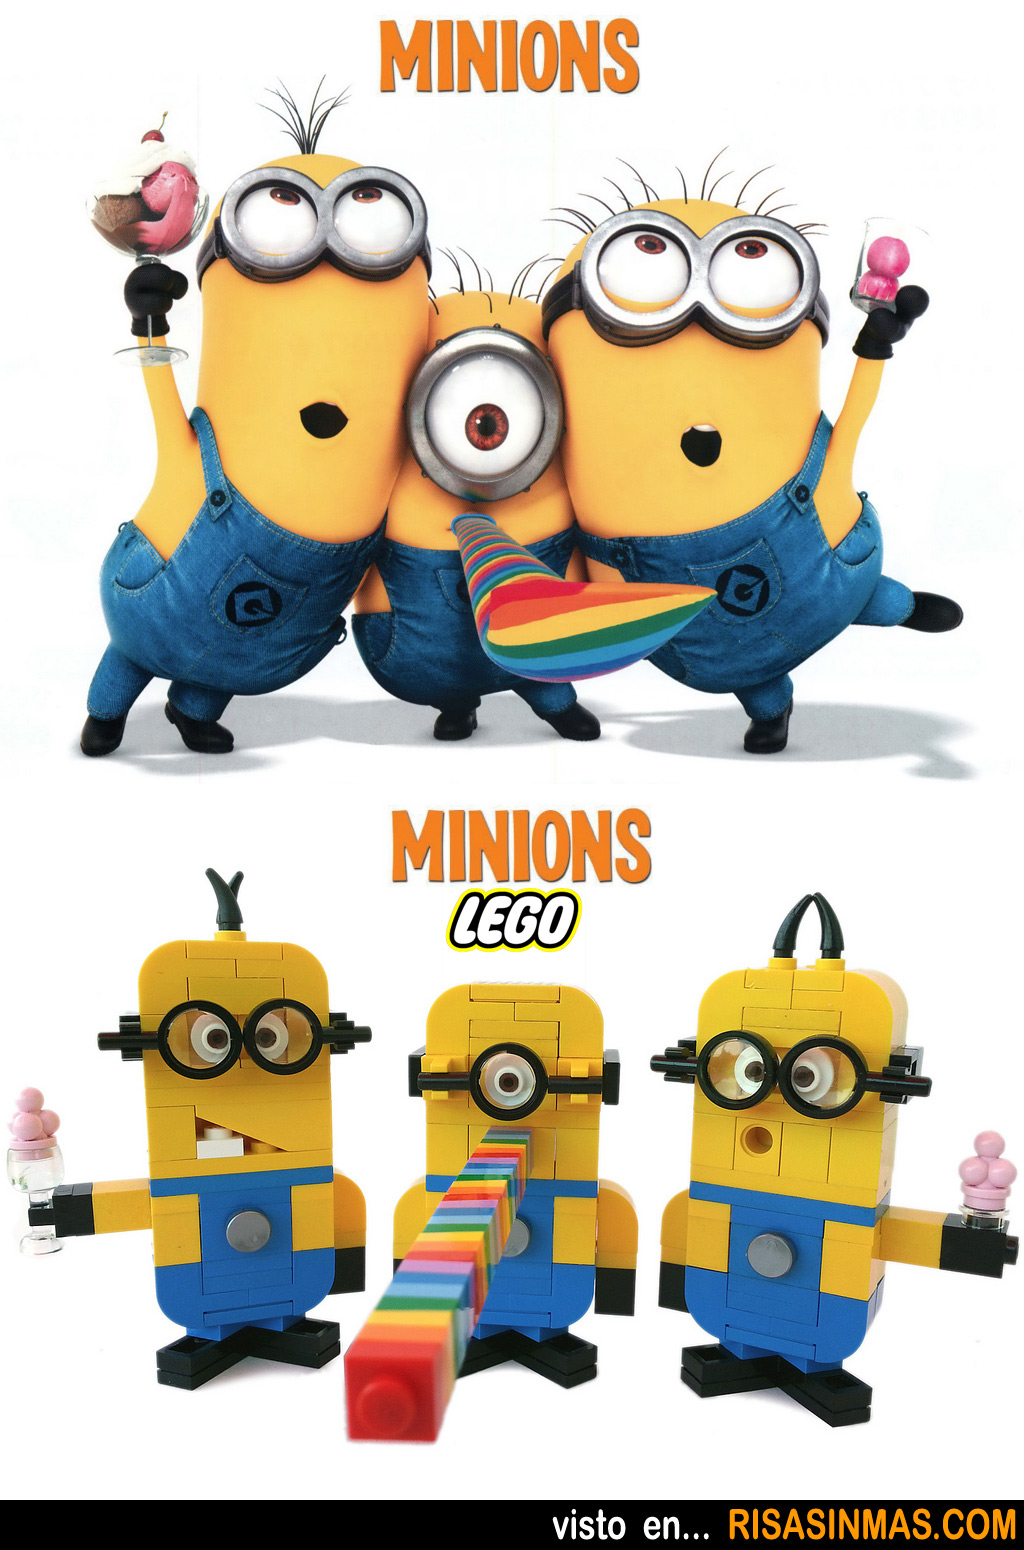 Parecidos razonables: Minions y Minions LEGO